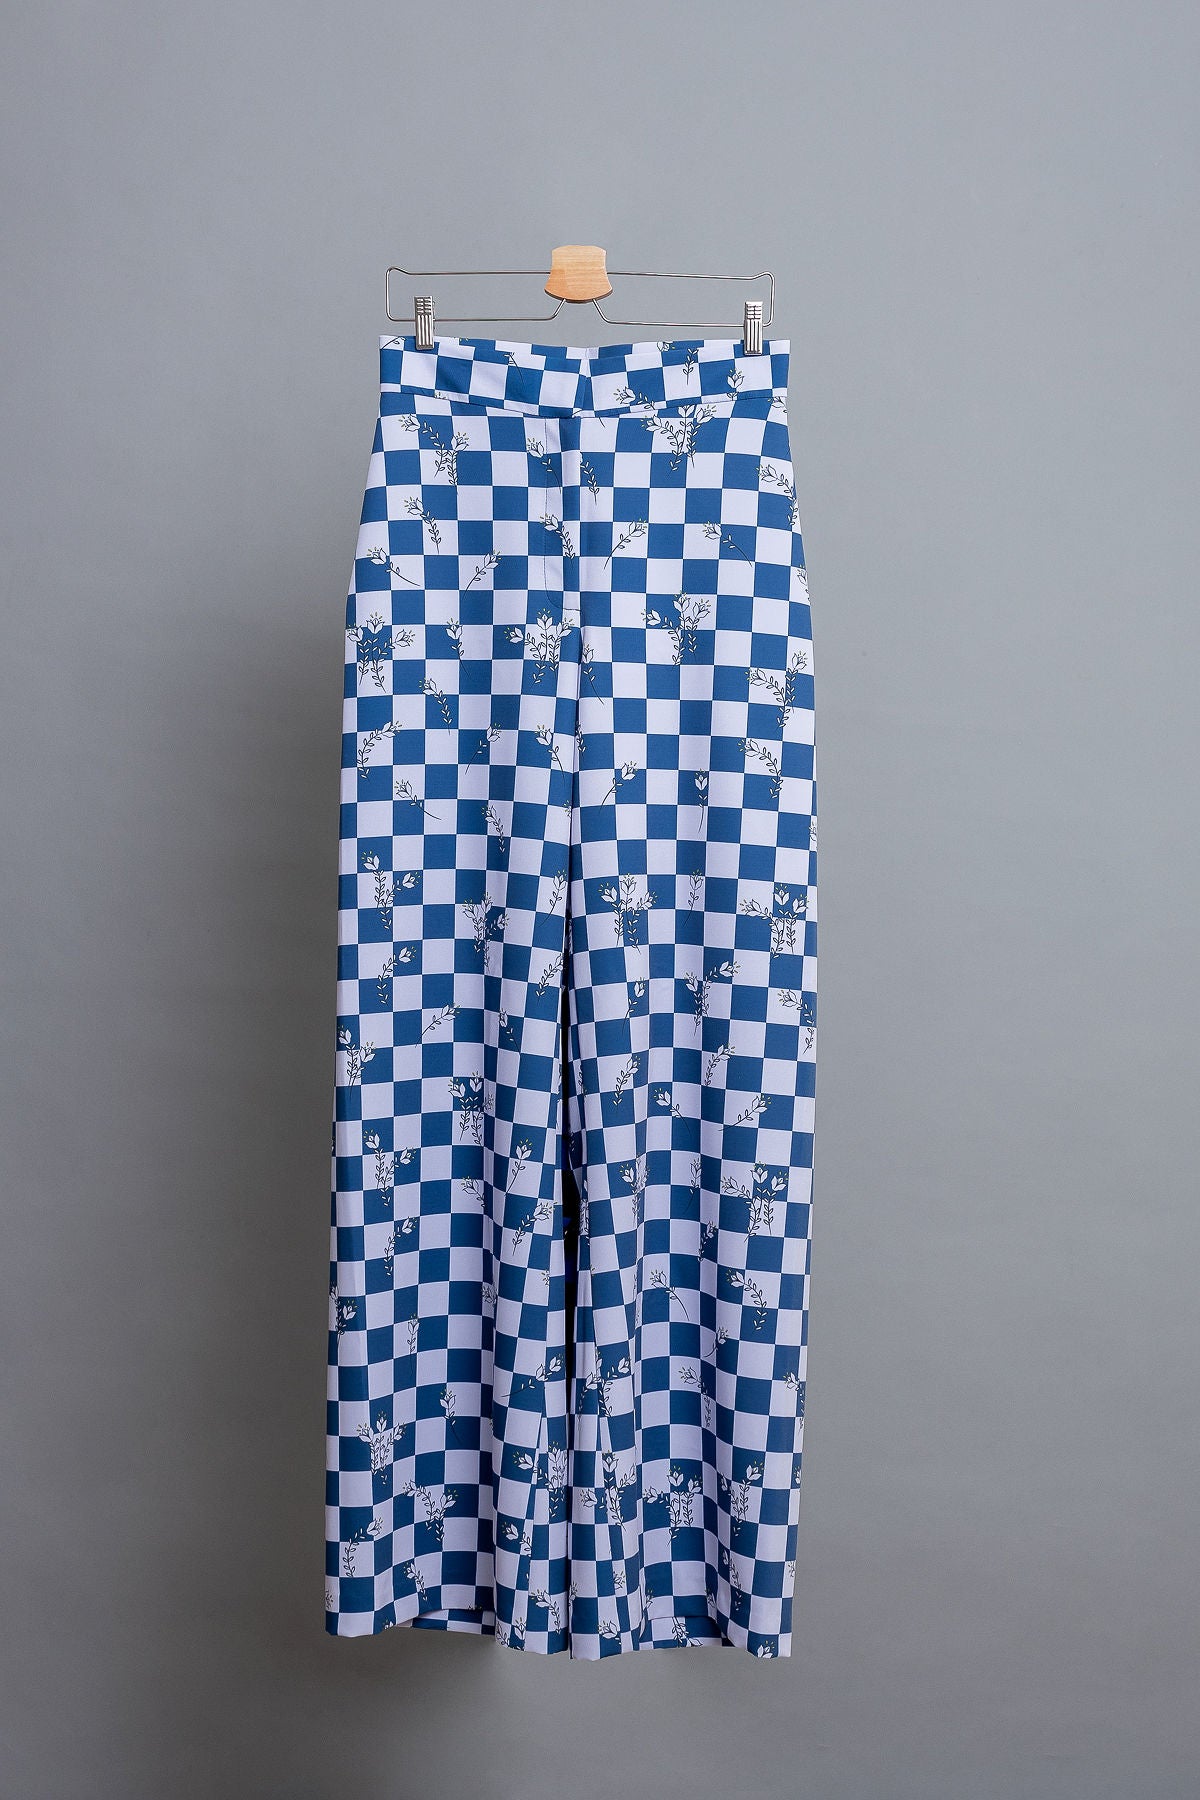 Checkerboard Lilac pants - Shantall Lacayo